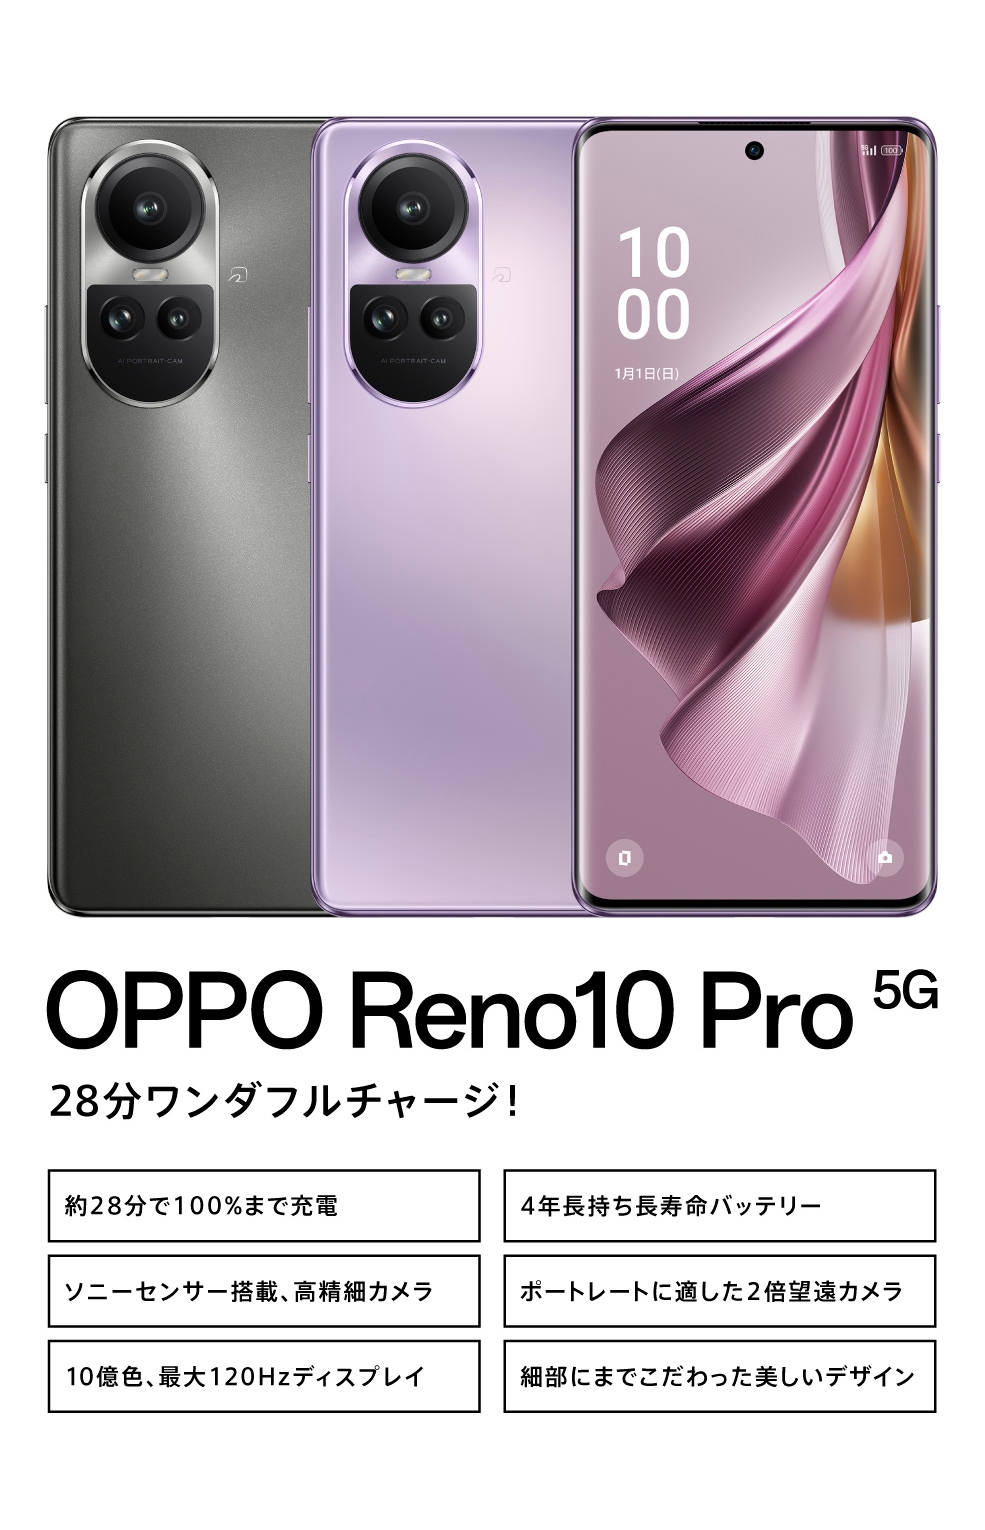 OPPO Reno10 Pro 5G 【SIMFREE】 | スマートフォン | OPPO公式 